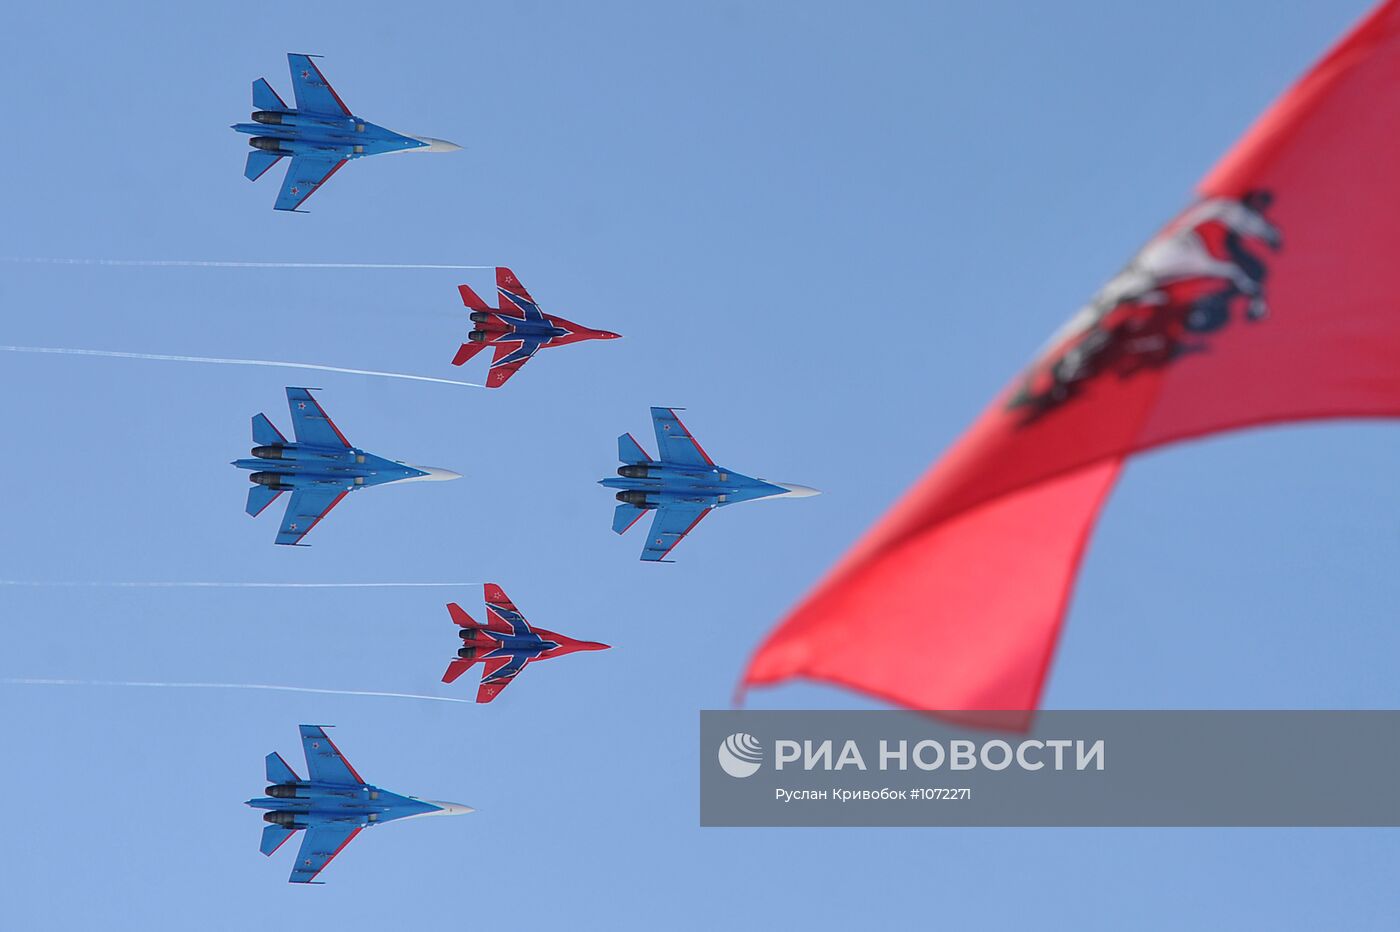 Полеты пилотажных групп "Русские витязи" и "Стрижи"